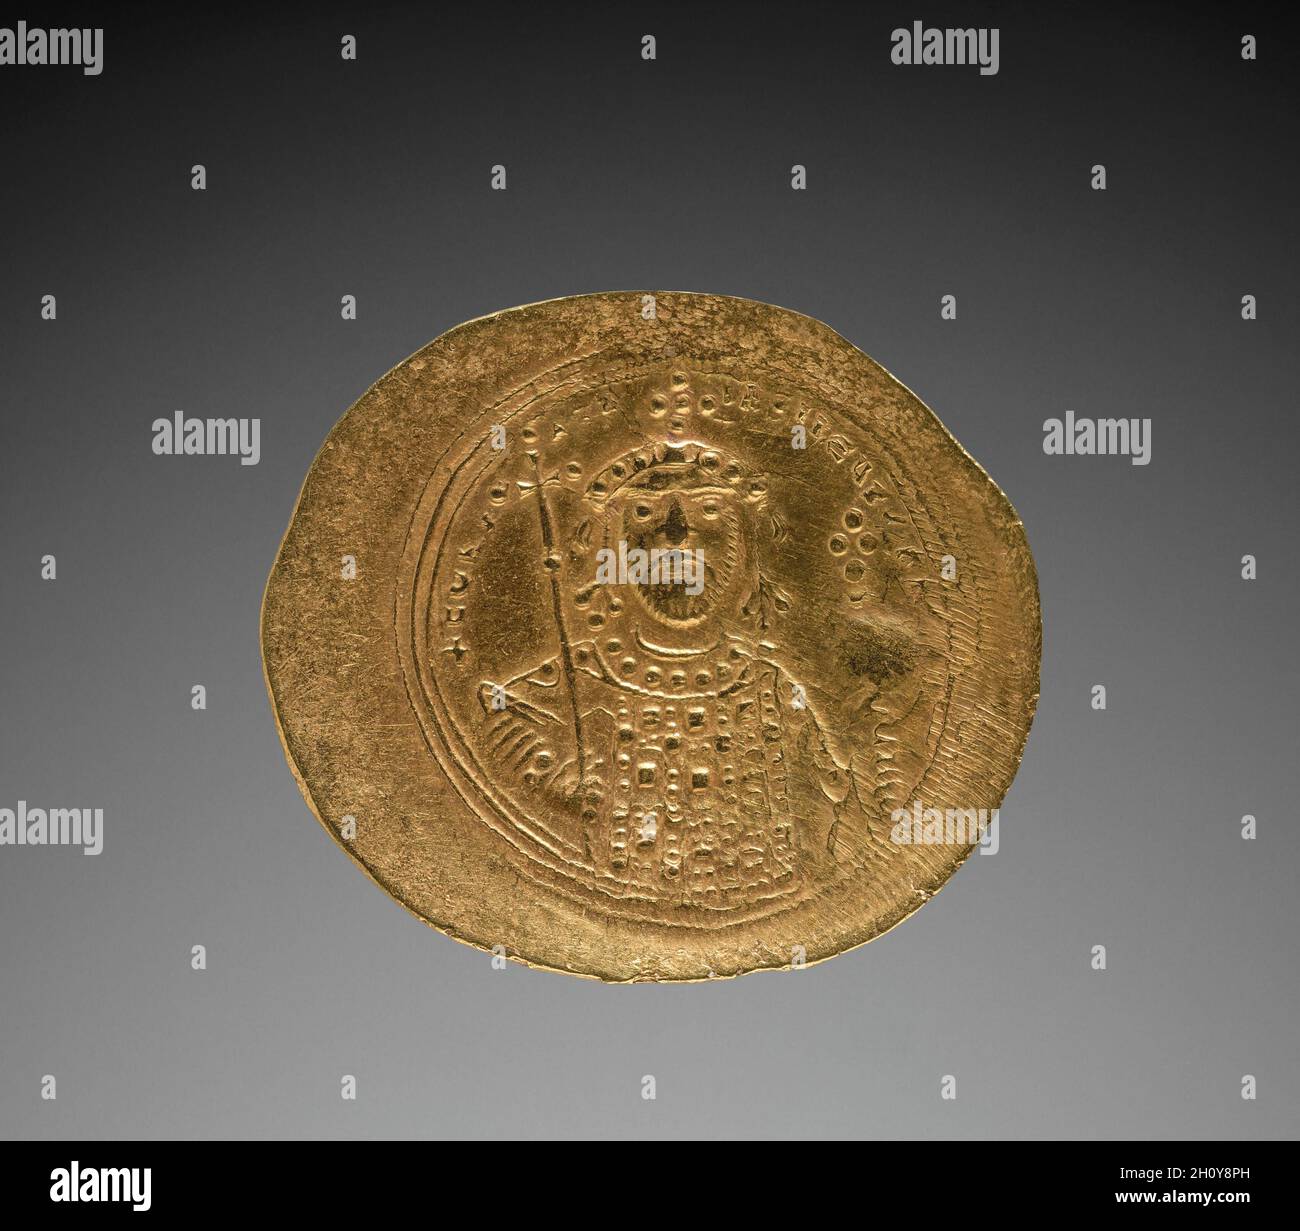 Nomisma mit Konstantin IX Monomachus (Rückseite), 1042-1055. Byzanz, 11.  Jahrhundert. Gold; Durchmesser: 2.9 cm (1 1/8 Zoll). Die große Zahl der  überlebenden byzantinischen Münzen zeugt vom Handelsniveau im ganzen Reich.  Die vom